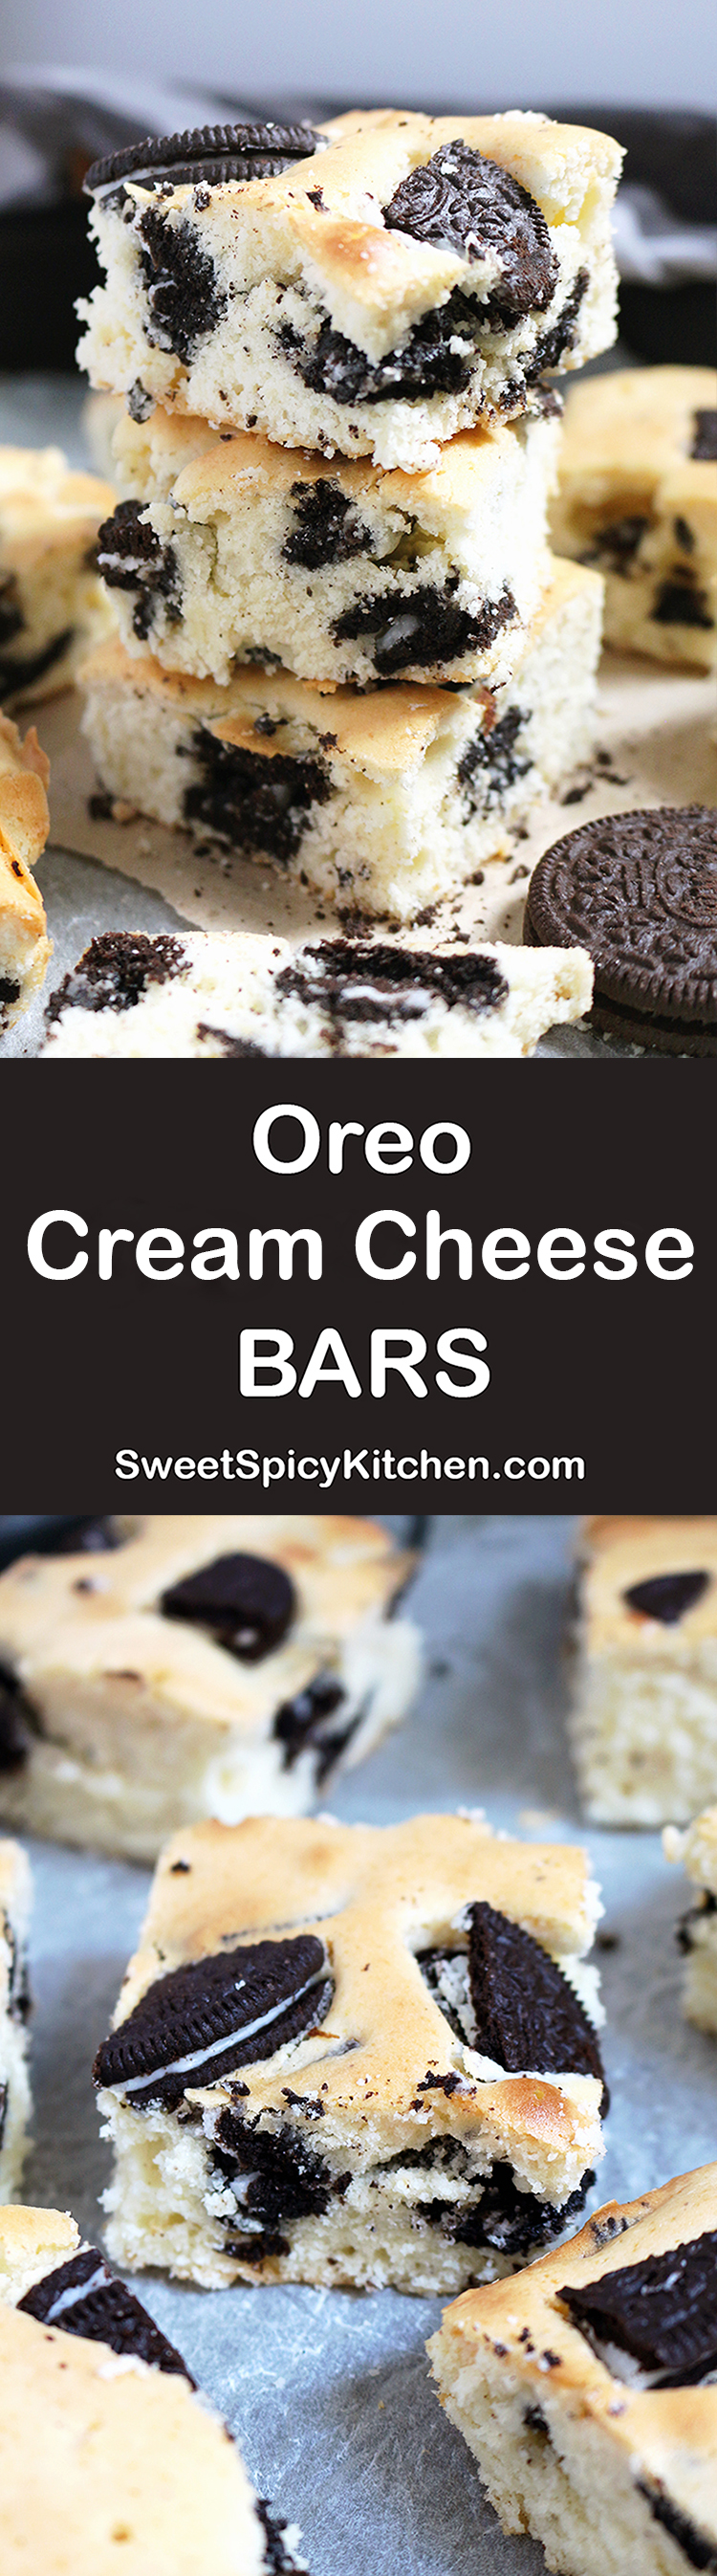 Oreo Cream Cheese Bars